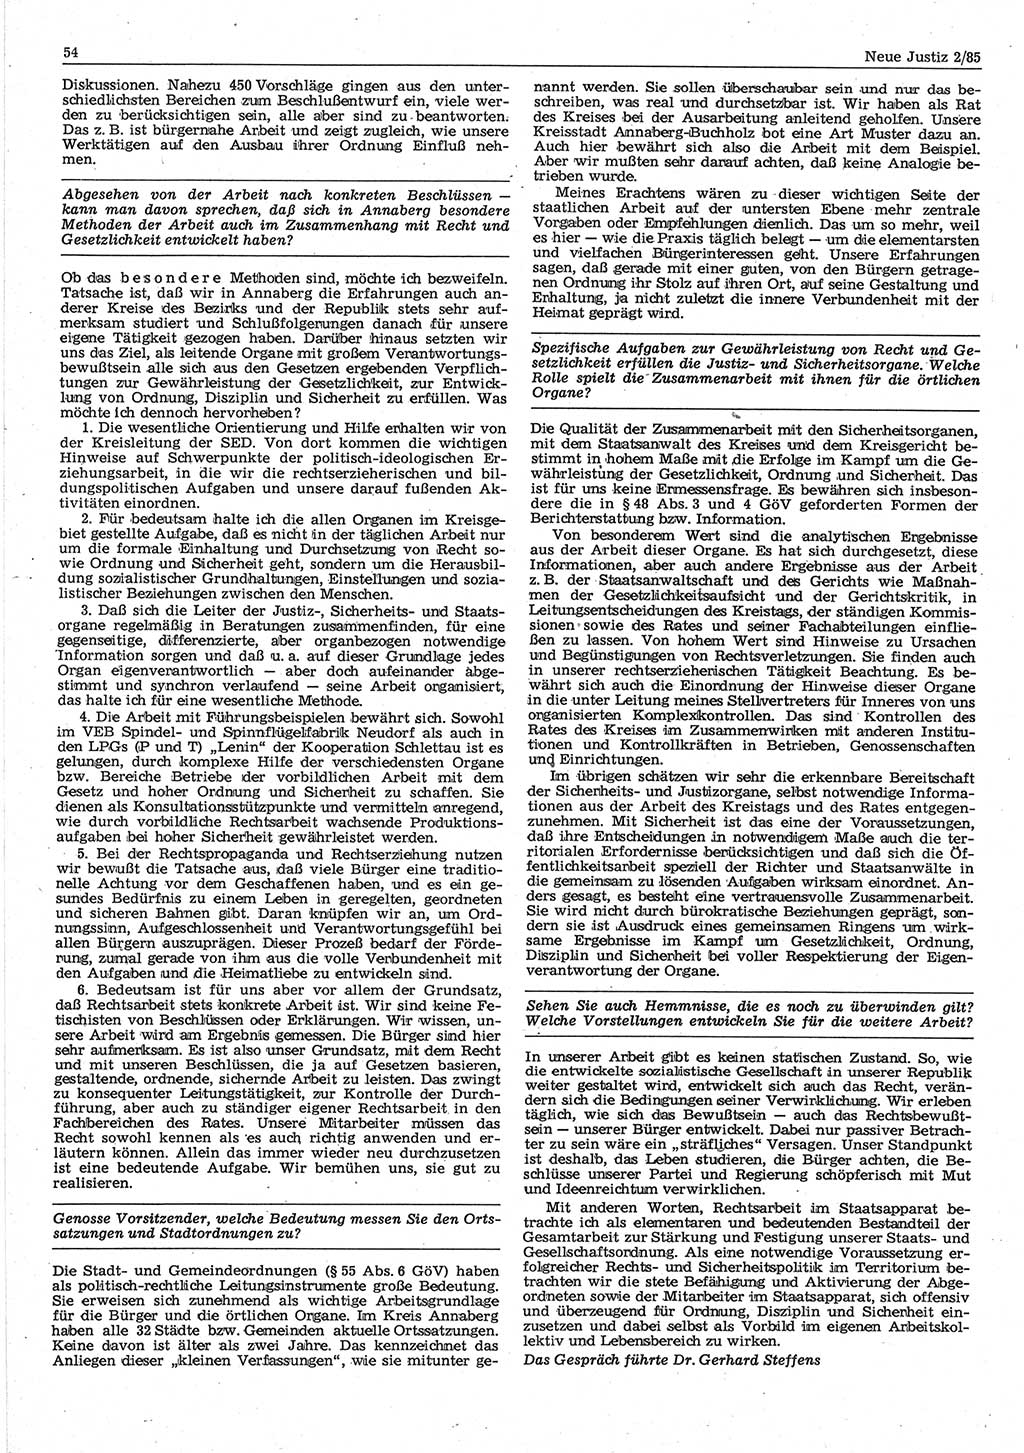 Neue Justiz (NJ), Zeitschrift für sozialistisches Recht und Gesetzlichkeit [Deutsche Demokratische Republik (DDR)], 39. Jahrgang 1985, Seite 54 (NJ DDR 1985, S. 54)